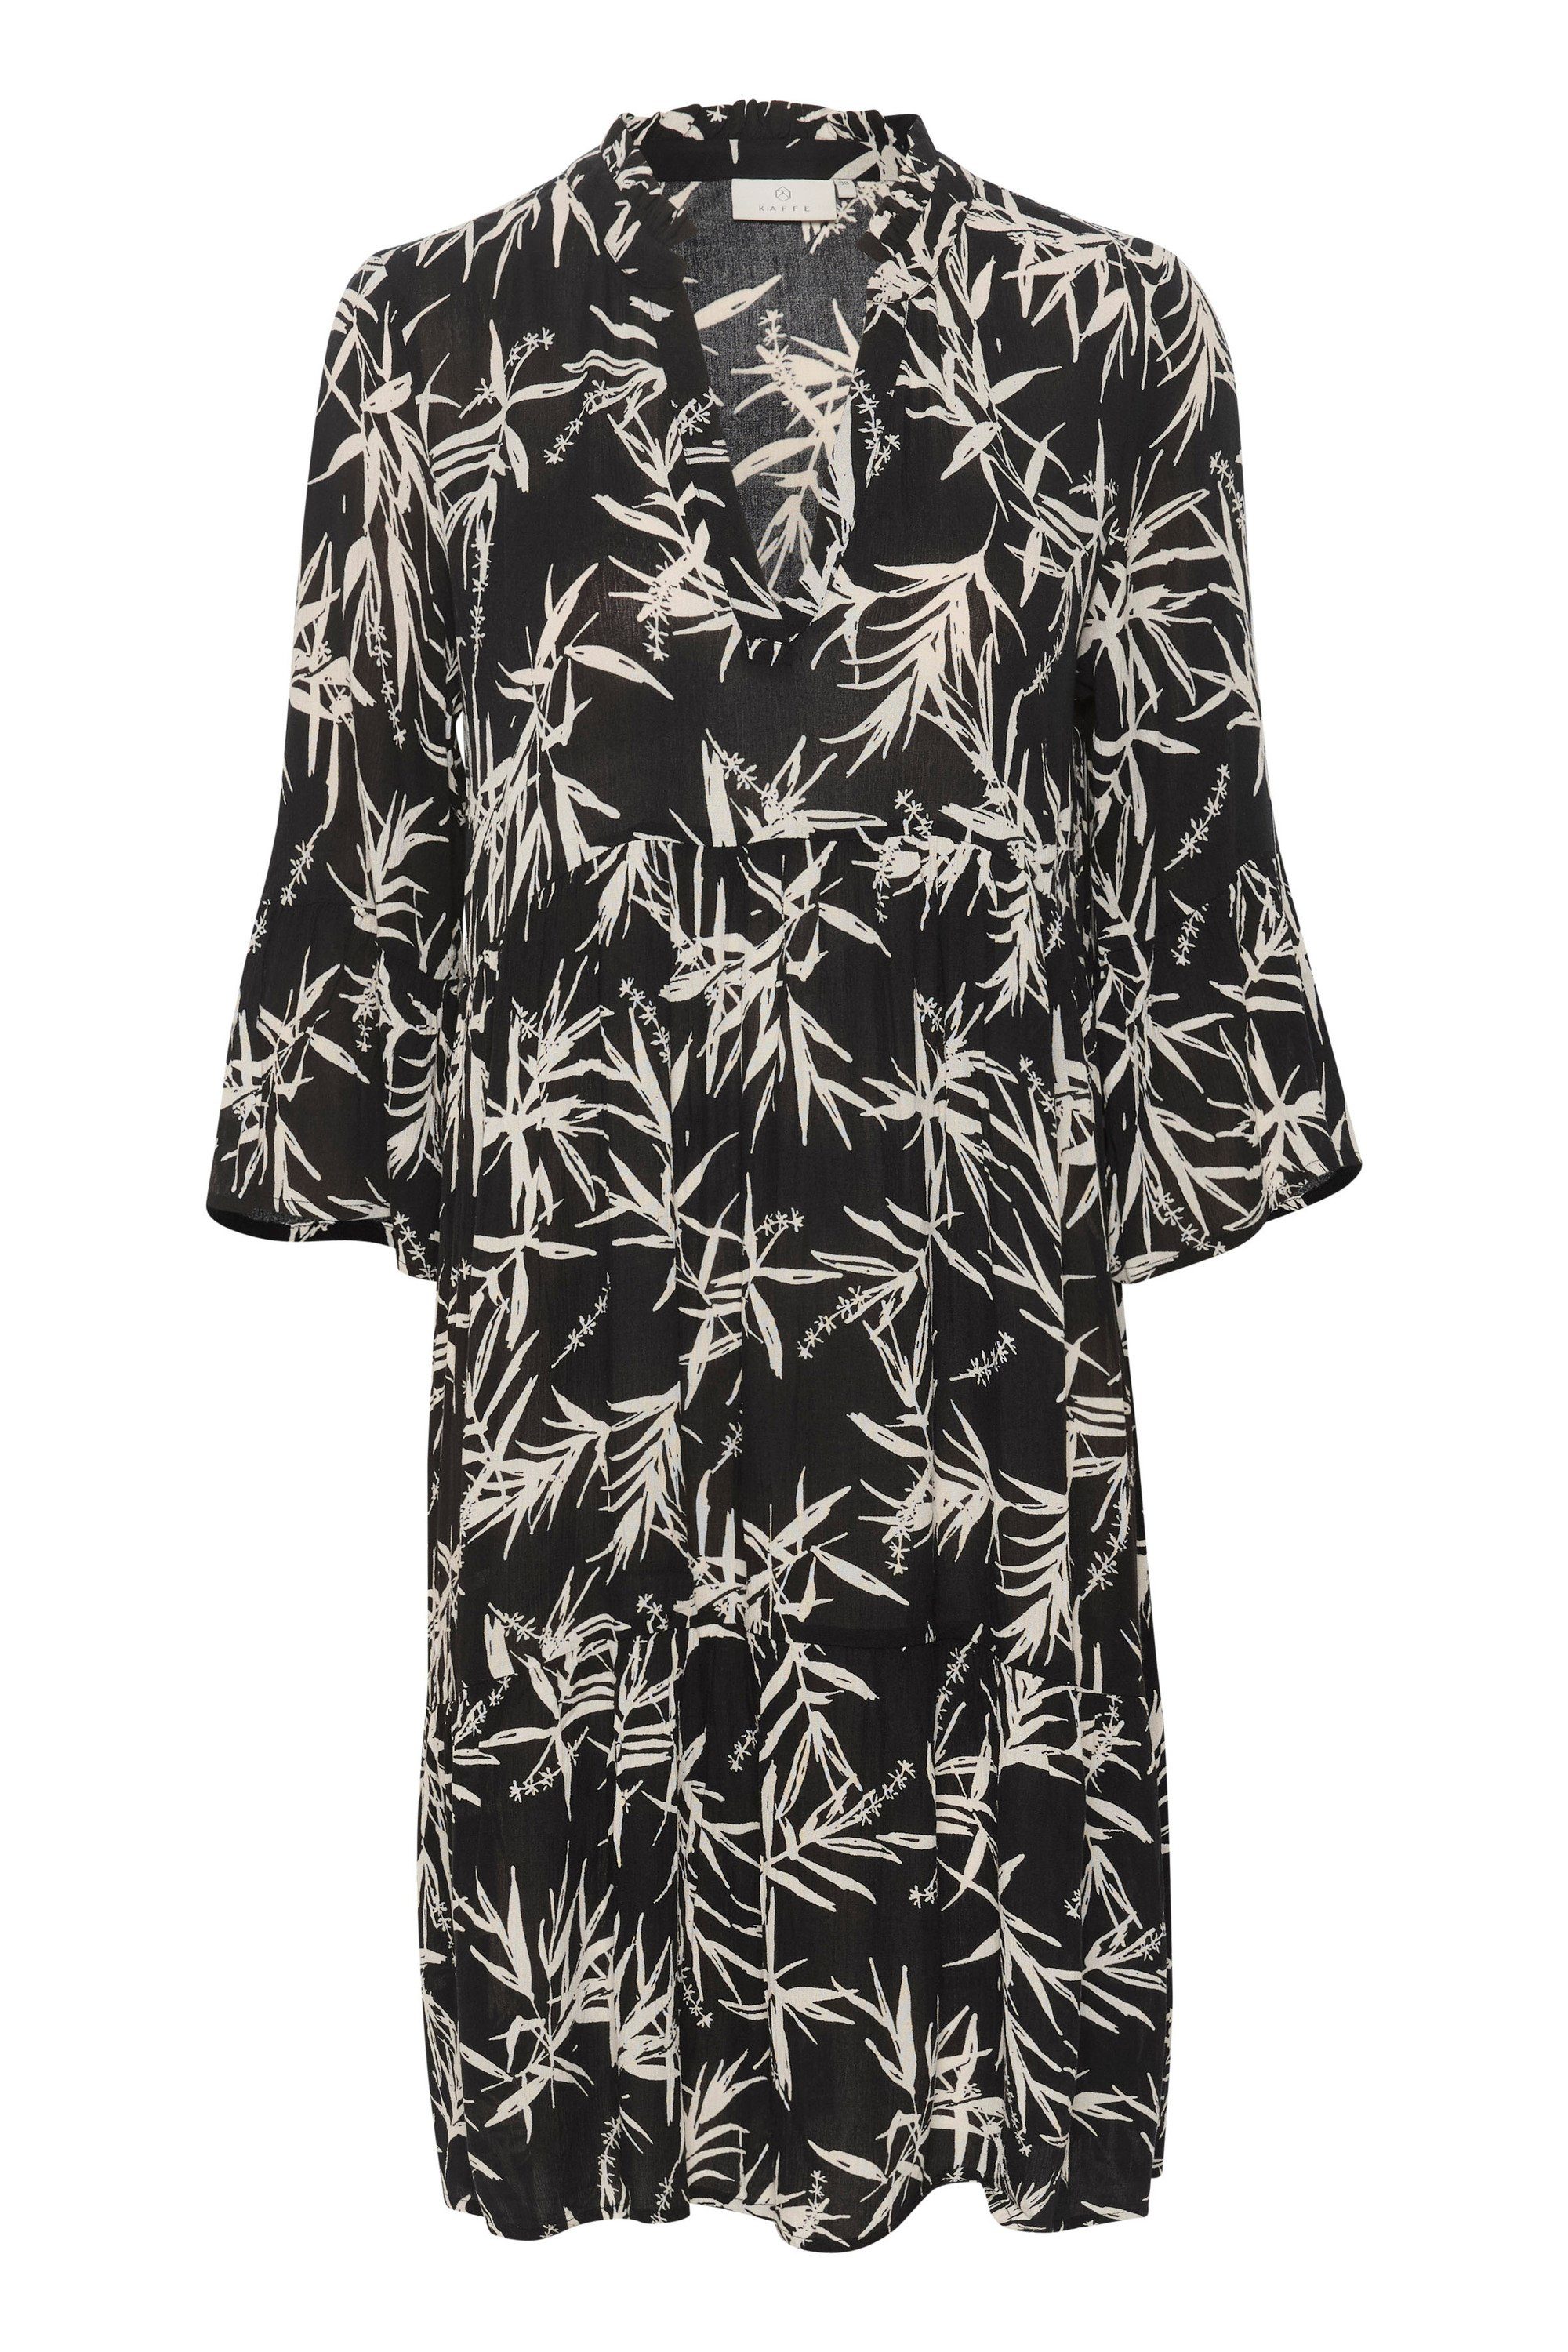 KAFFE Jerseykleid Kleid KAhera Black White Leaf print